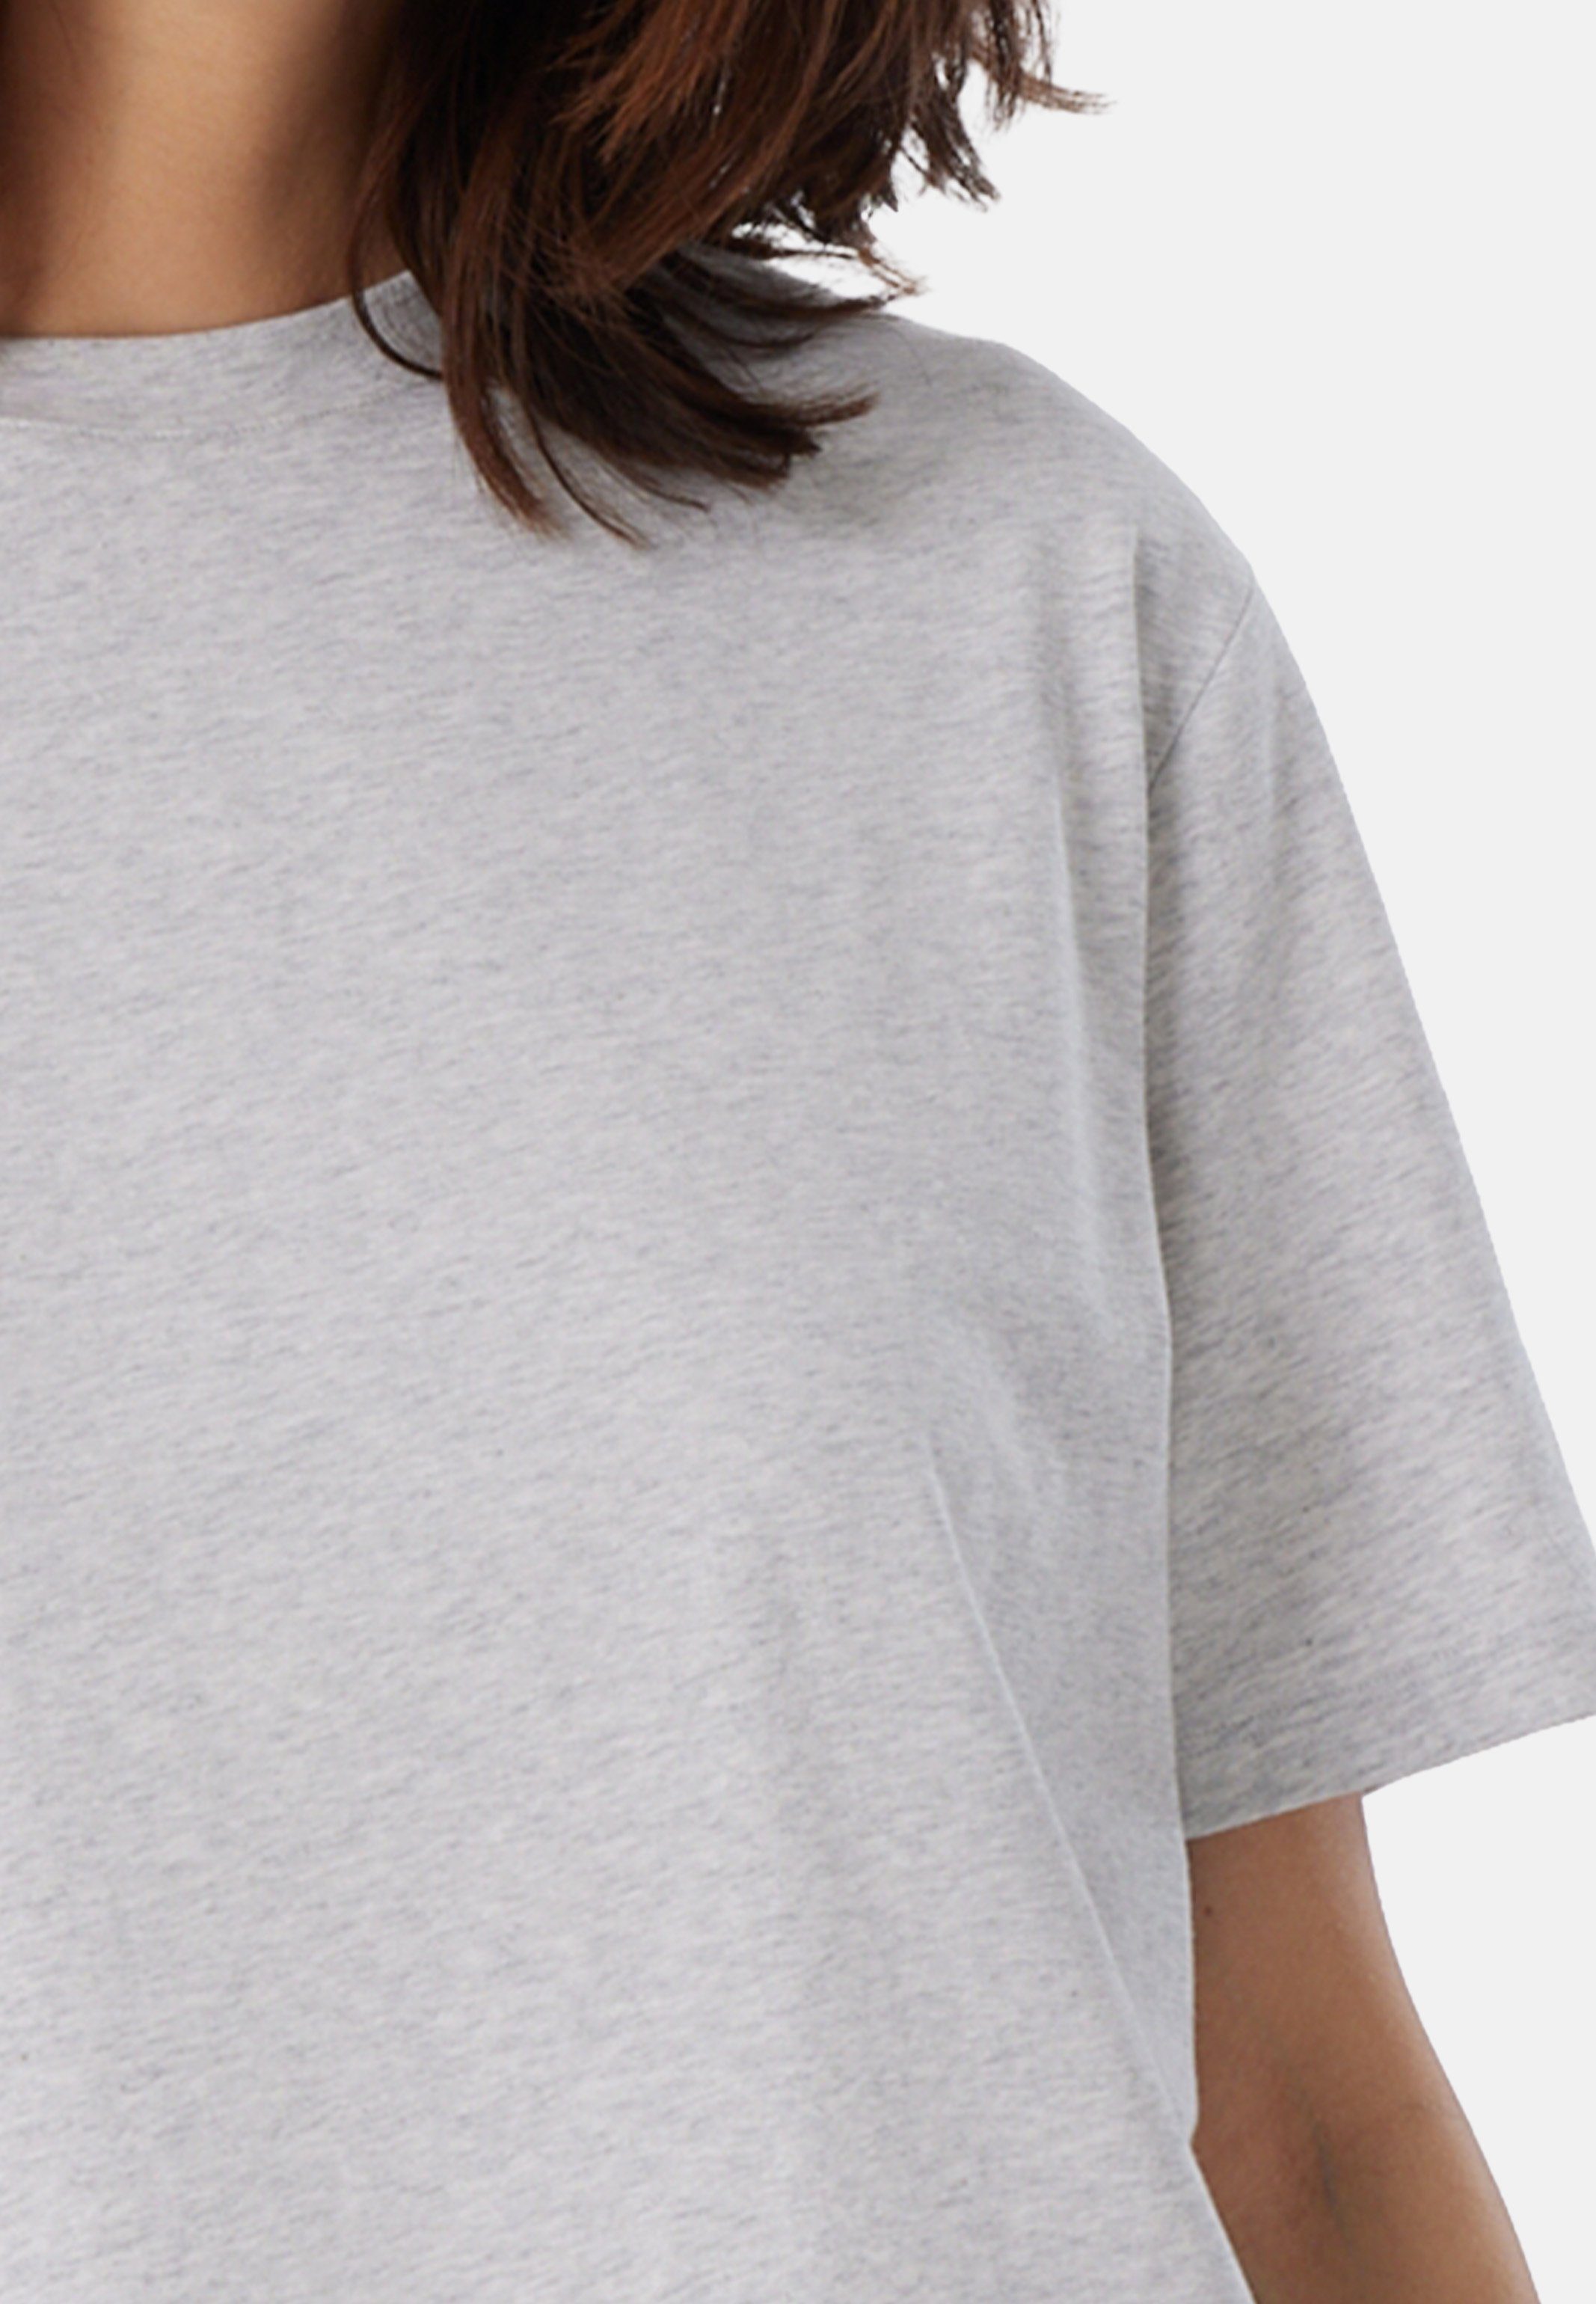 kurzarm Mix Baumwolle - Pyjamaoberteil & Grau-Melange Schiesser Schlafanzug Organic Cotton (1-tlg) Shirt Relax -